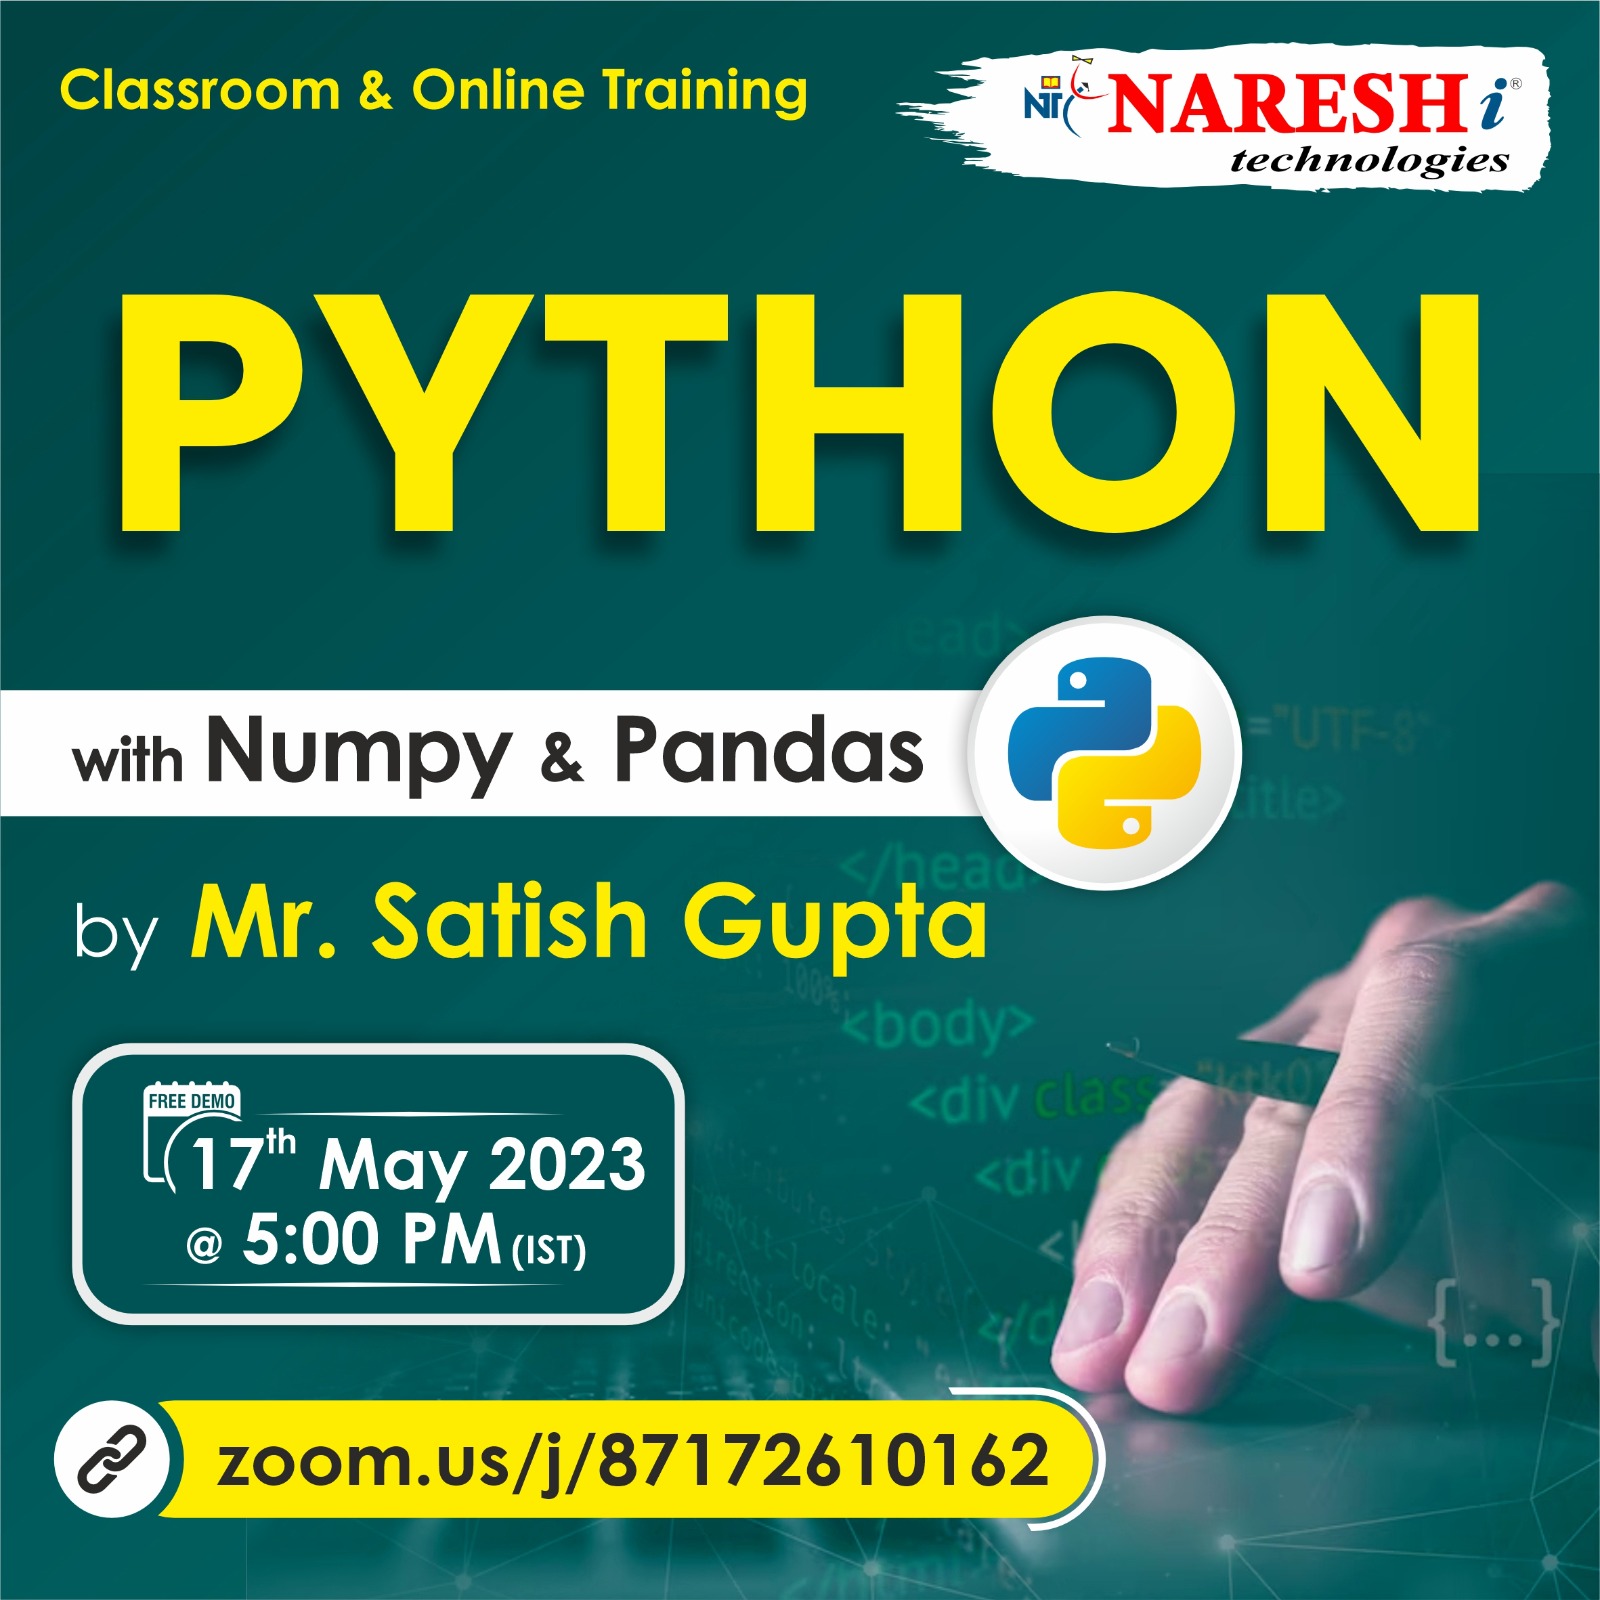 Free Online Demo On Python by Mr.Satish Gupta NareshIT, Online Event